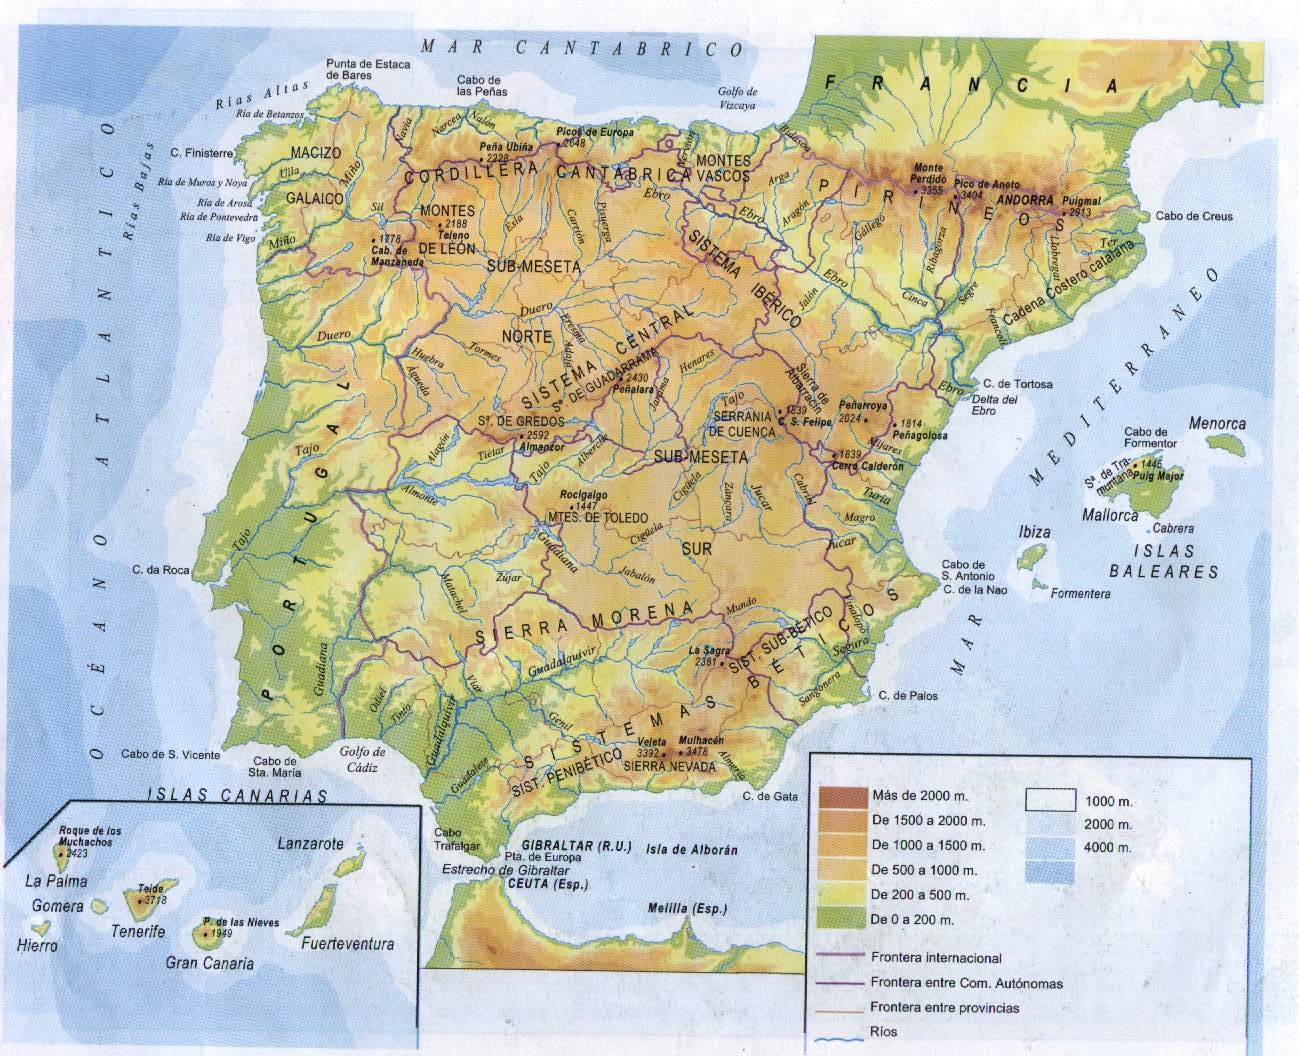 mapa fisico detallado de españa Mapa Fisico De Espana Tamano Completo Gifex mapa fisico detallado de españa